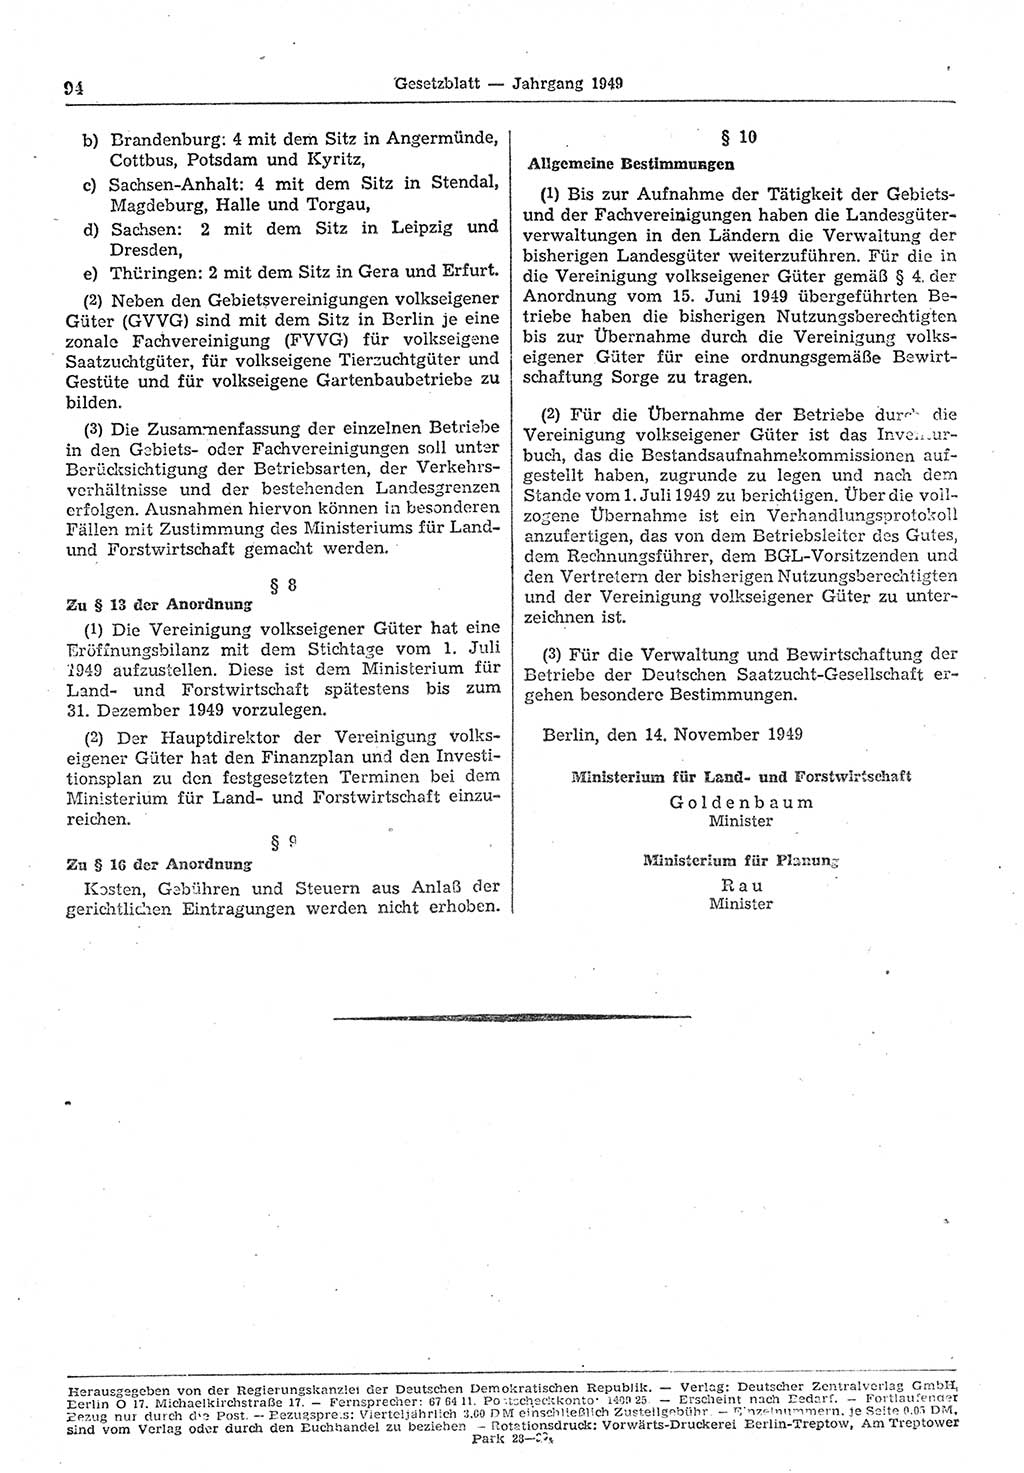 Gesetzblatt (GBl.) der Deutschen Demokratischen Republik (DDR) 1949, Seite 94 (GBl. DDR 1949, S. 94)